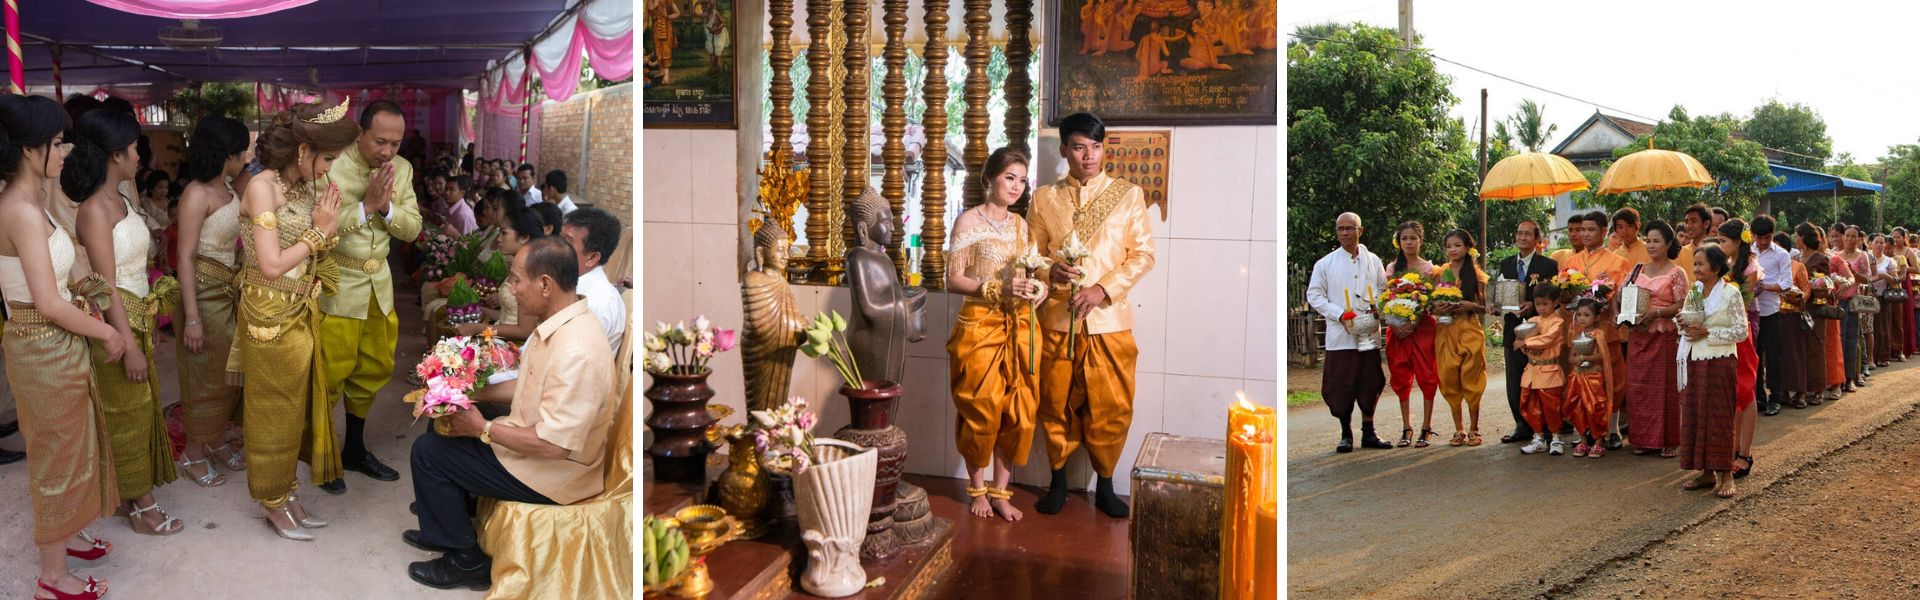 Il matrimonio tradizionale in Cambogia